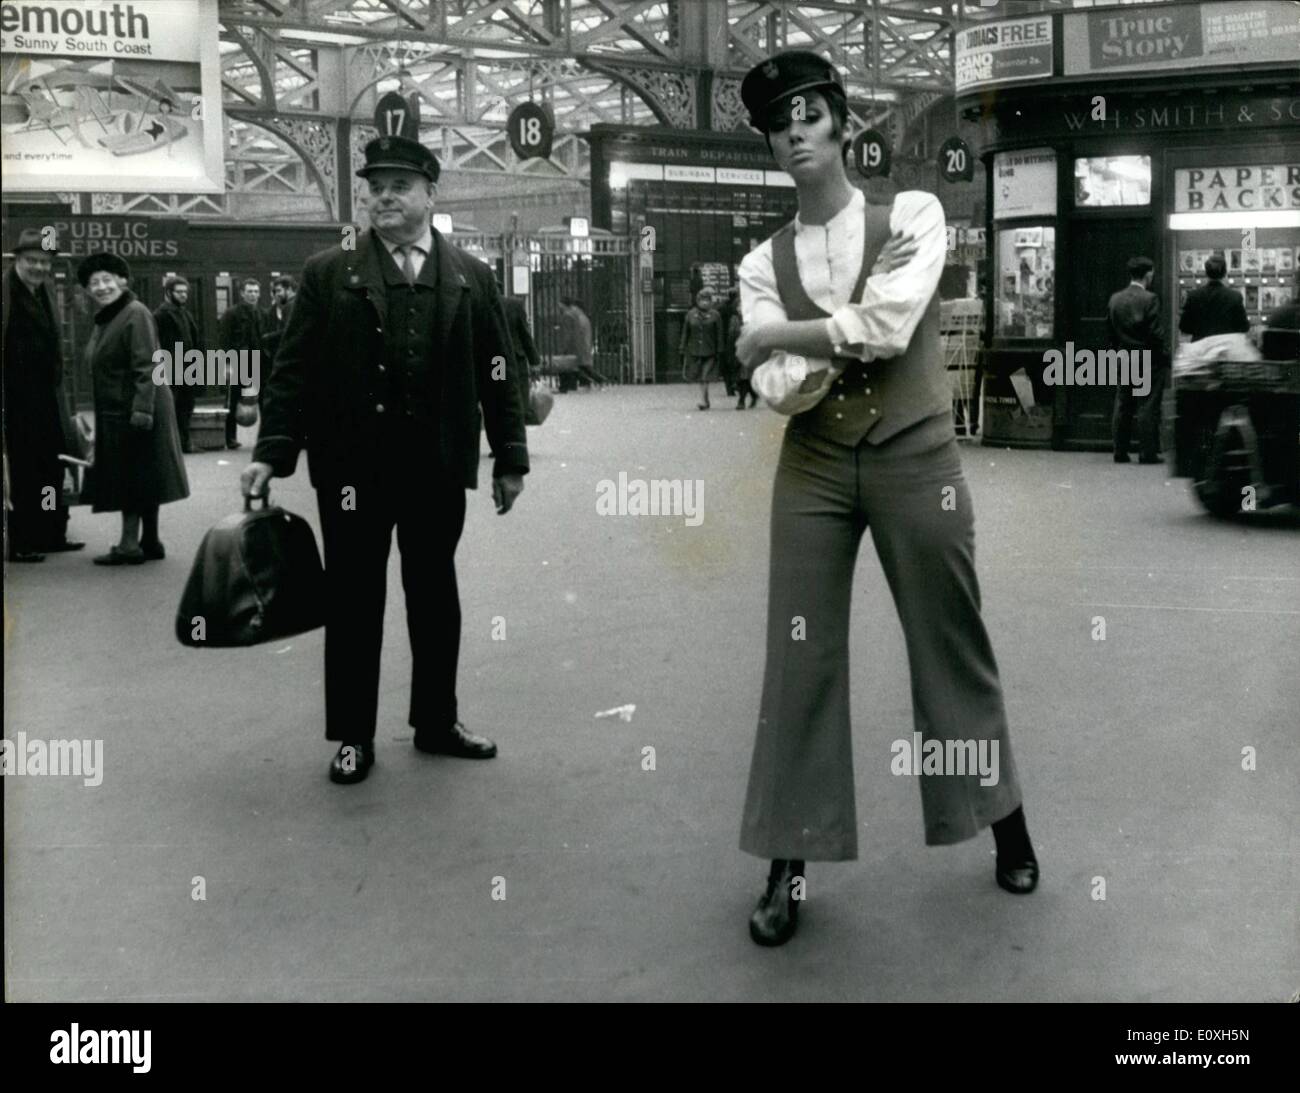 12. Dezember 1966 - das Modell mit dem Aussehen eines Trägers, die Waterloo Station aufgehellt; Das Mädchen gegenüber Plattform 17 wird nicht Ihre Tasche Luft tragen. Sie dachte, sie British Railways neue Idee eines Trägers und eine gute Idee damals war. So die Passagiere auf der Londoner Waterloo Station als ein Modell erschien tragen was soviel wie ein Portier Uniform sah. Aber das Outfit, das Modell trug, war die aktuelle Modeerscheinung - eine kleine alte Hosenanzug mit Weste für Mädchen, auf Partys zu tragen Stockfoto